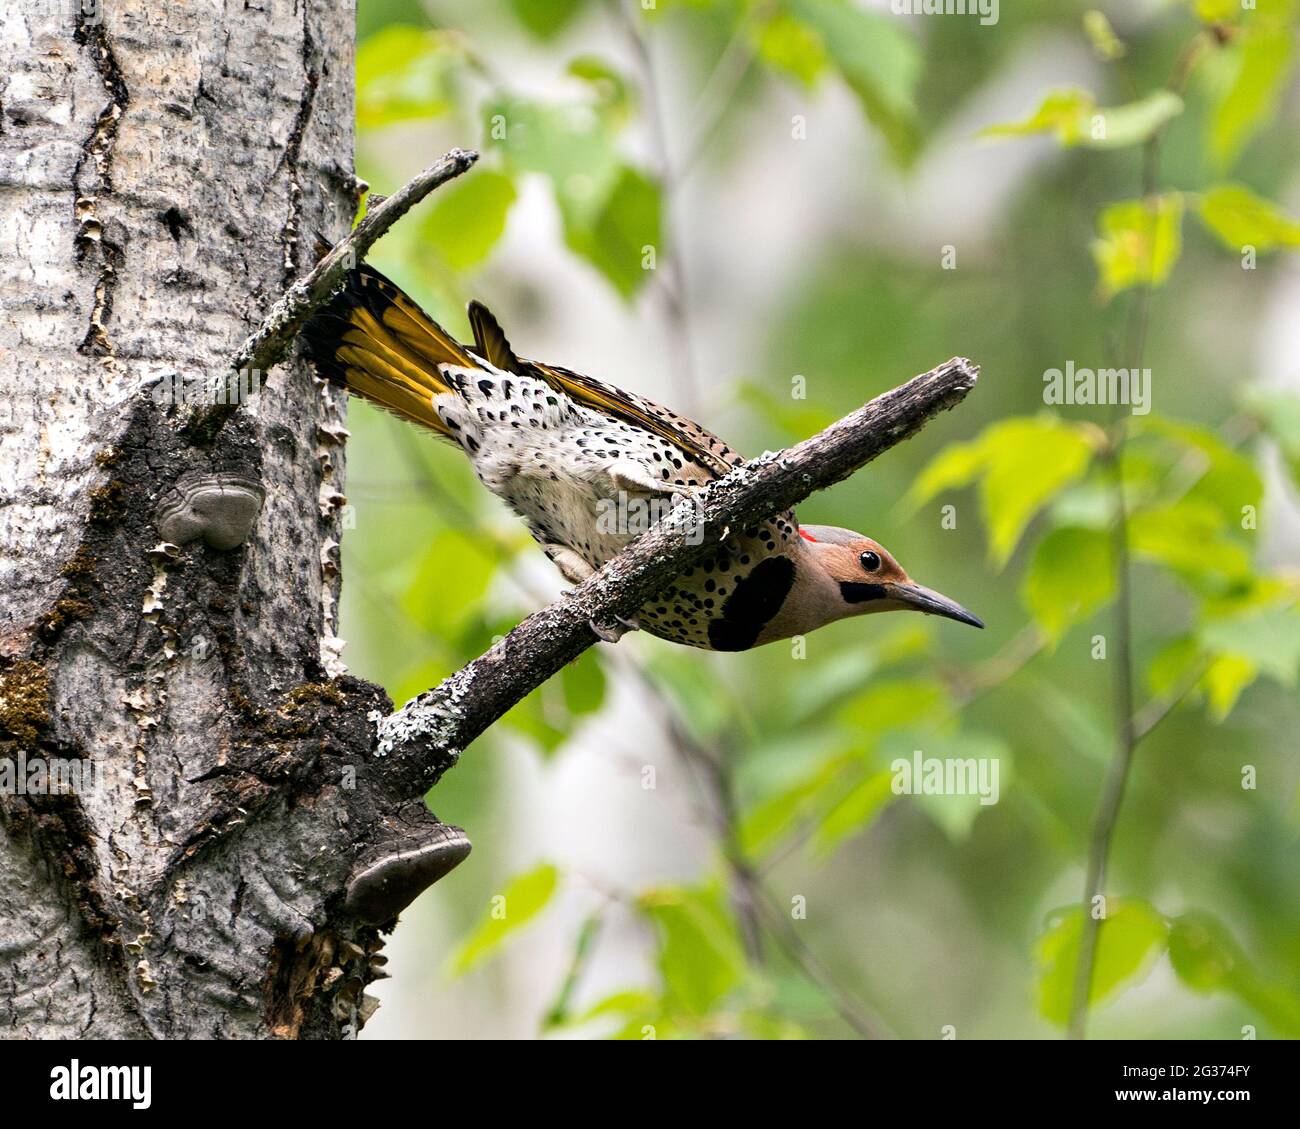 Nahaufnahme eines männlichen Vogels mit nördlichem Flicker, der auf einem Zweig in seiner Umgebung und Umgebung während der Vogelsaison thront und auf einem grünen Rücken verwischt ist Stockfoto